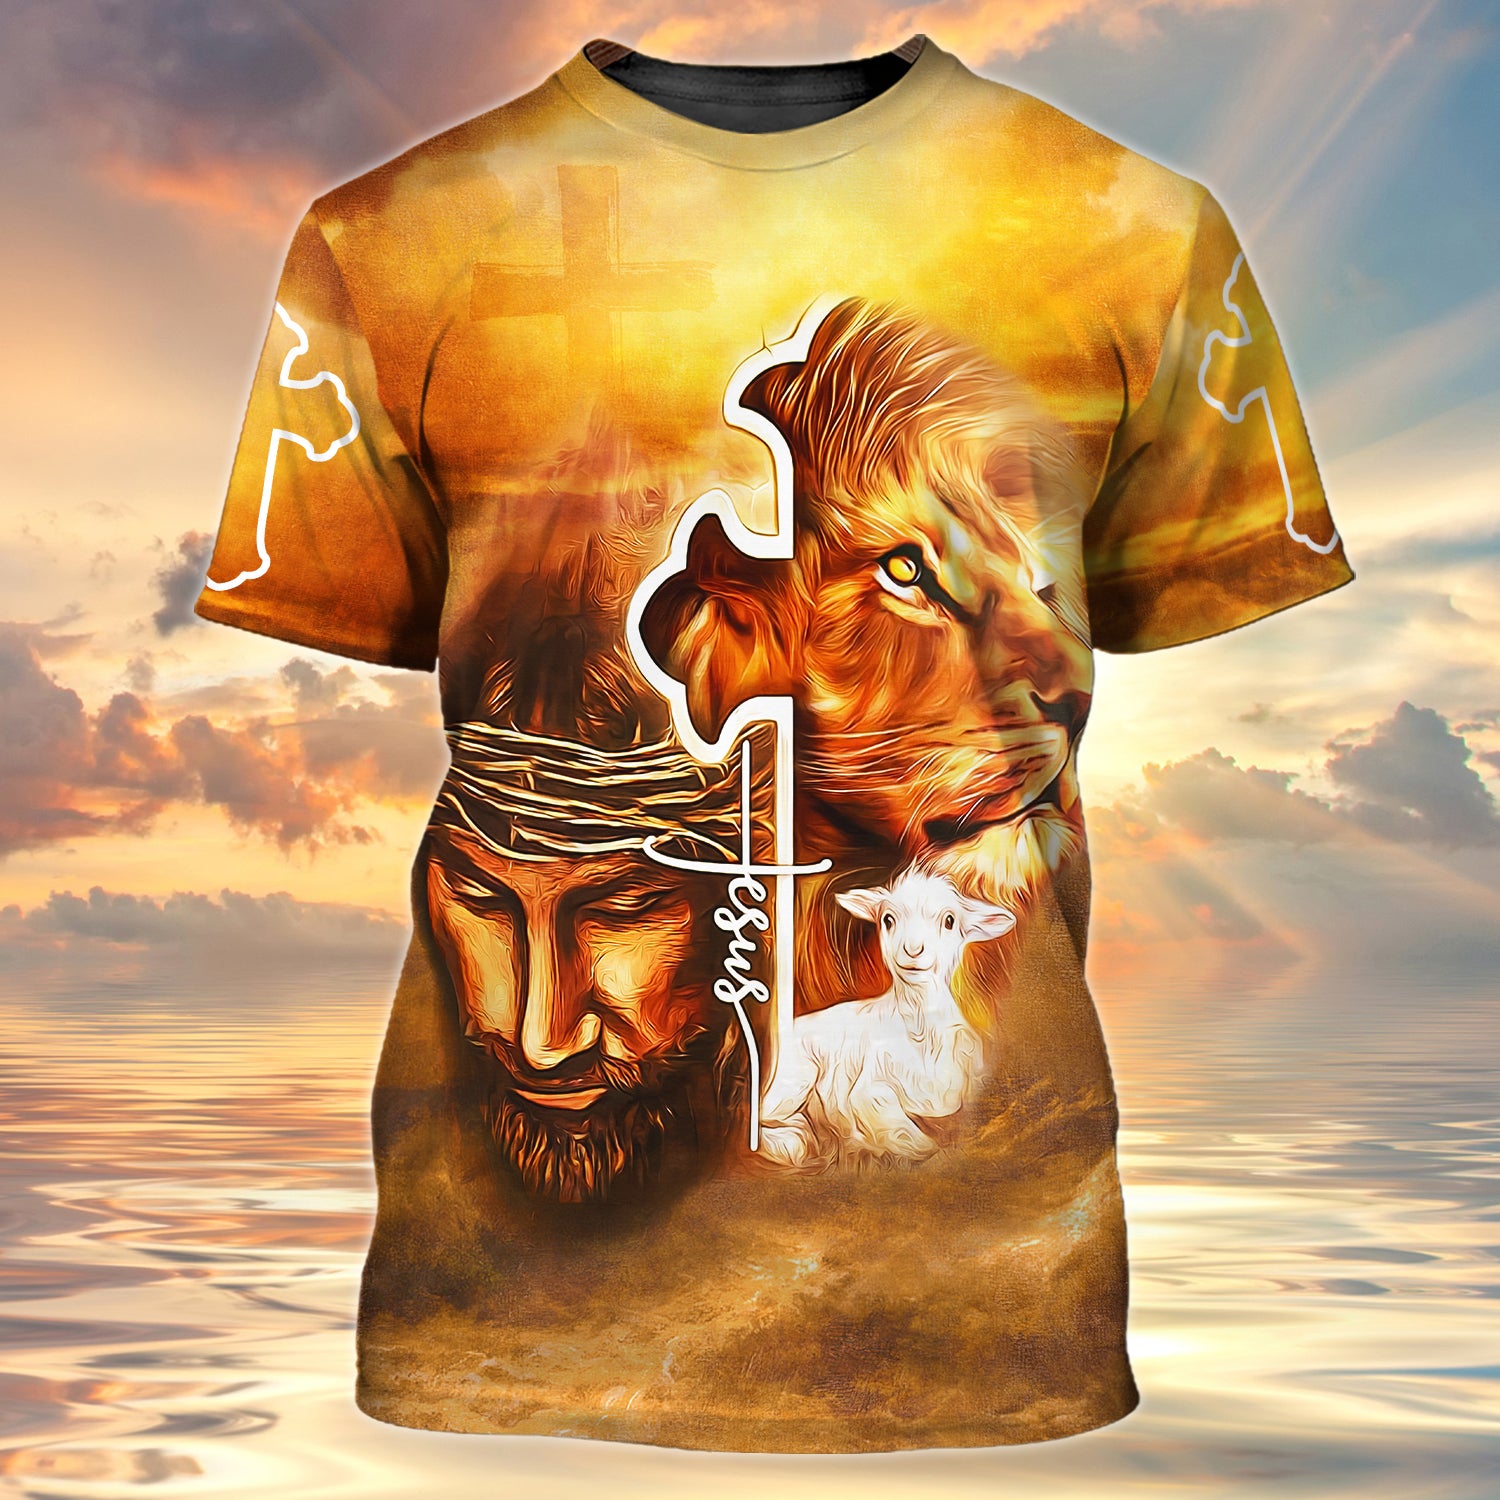 Jesus 3d full print shirt christian gift 1860 htv